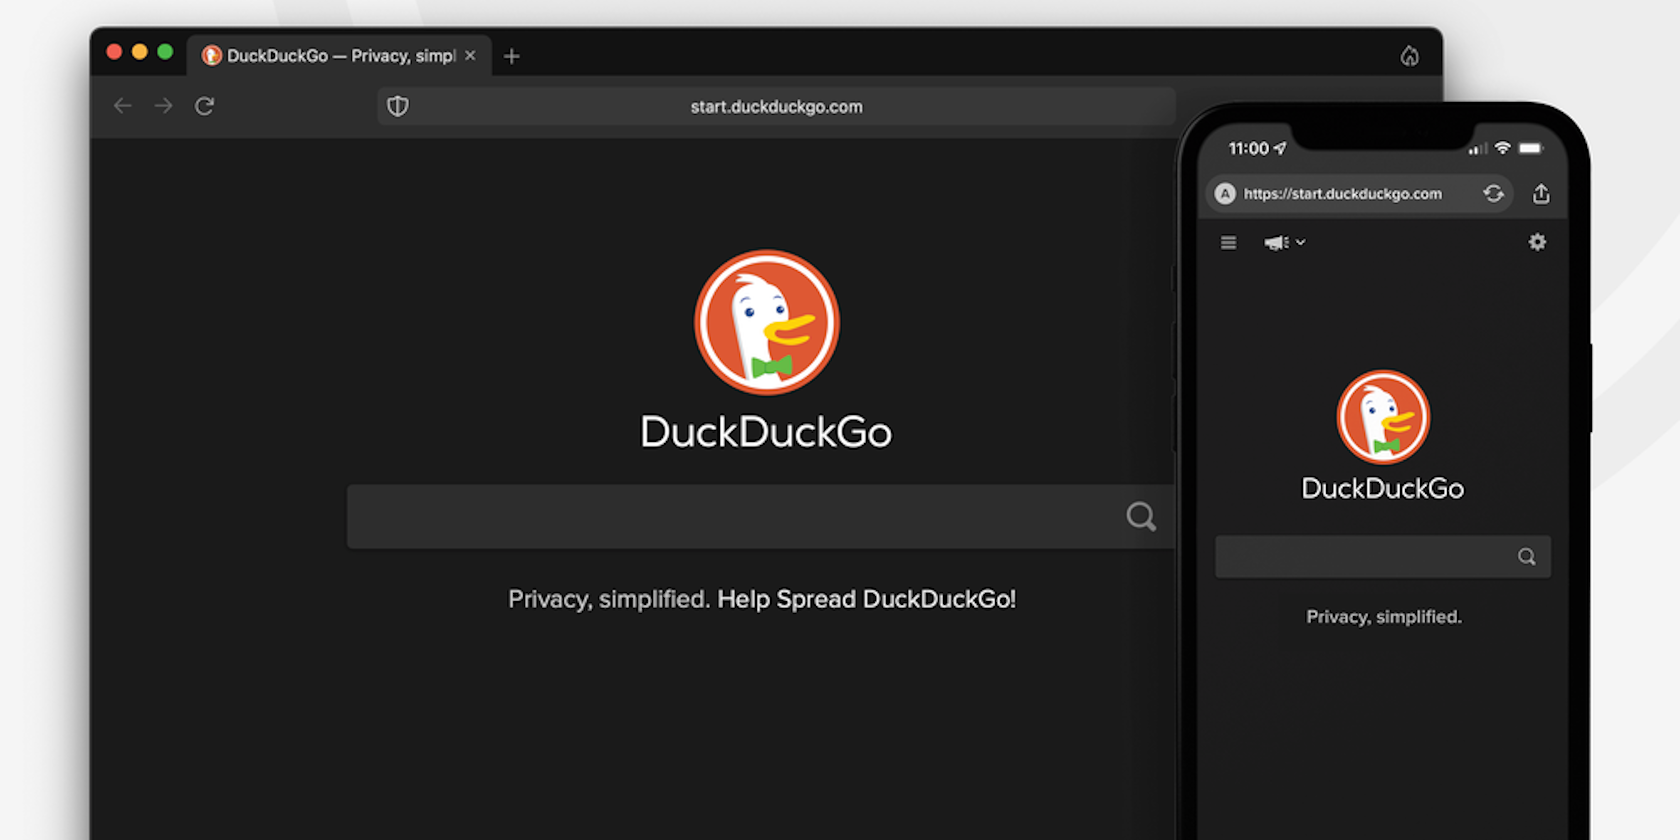 DuckDuckGo privacy focused browser